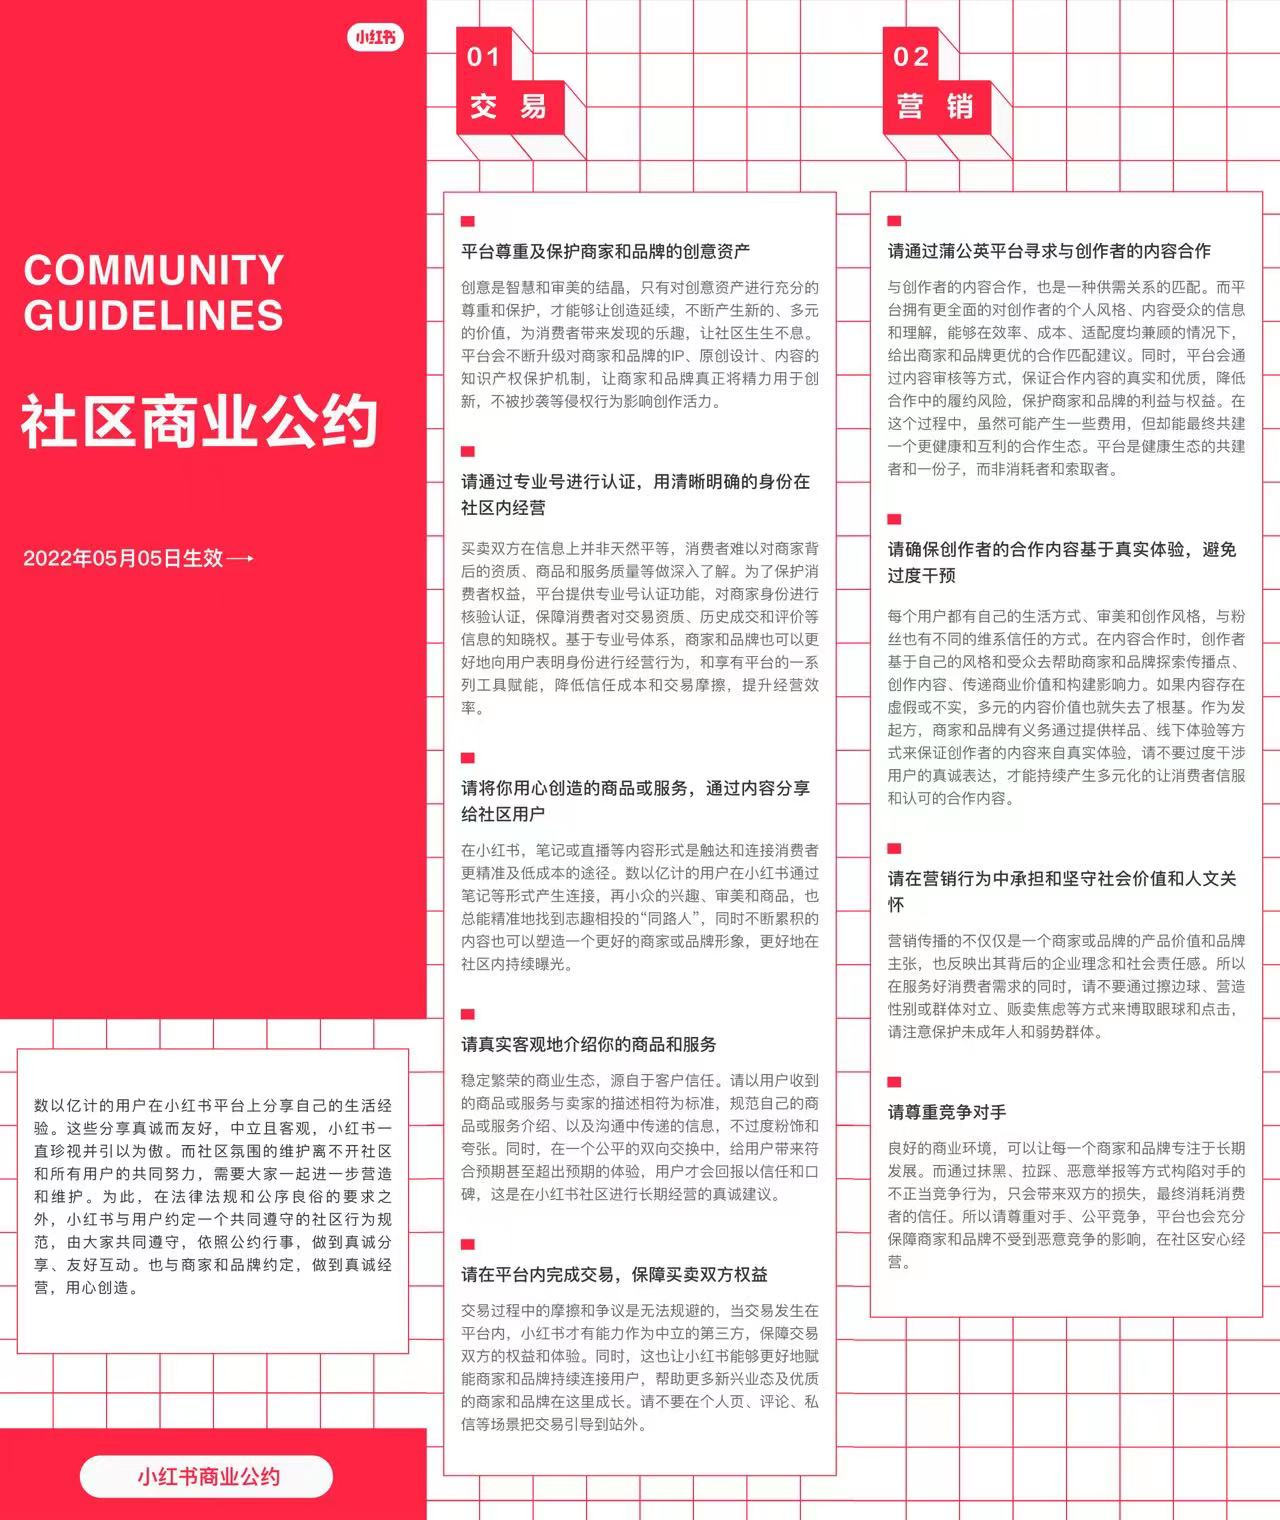 《社区商业公约》，是小红书在此前上线的《社区公约》基础上增设的有机组成部分